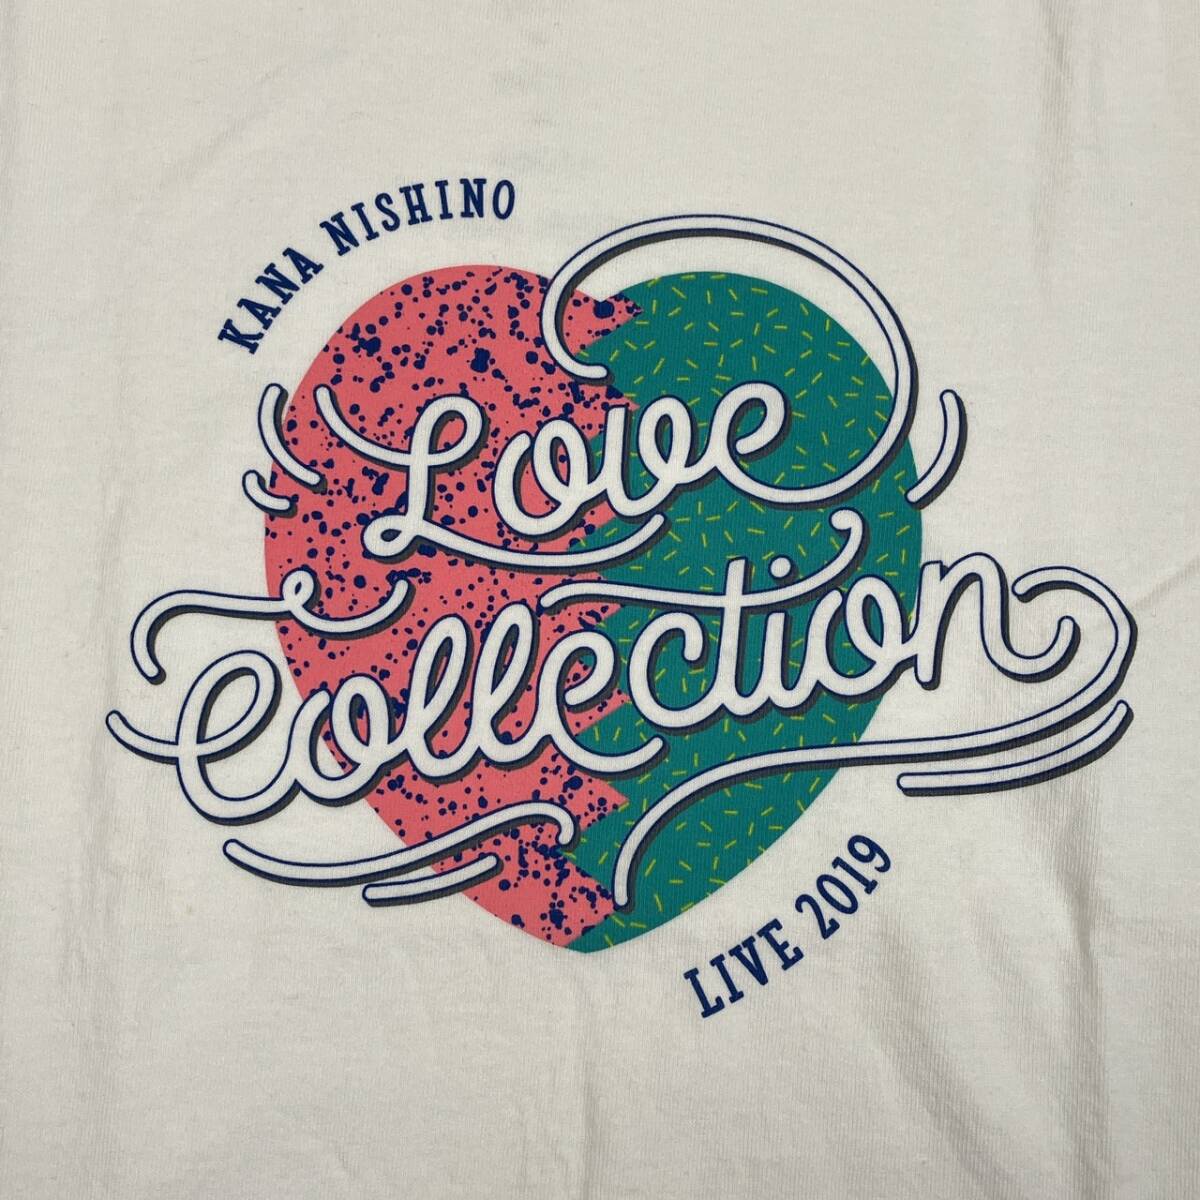 S 西野カナ LOVE COLLECTION 2019ツアー ライブTシャツ 丸首 ホワイト 半袖 リユース ultralto ts2228